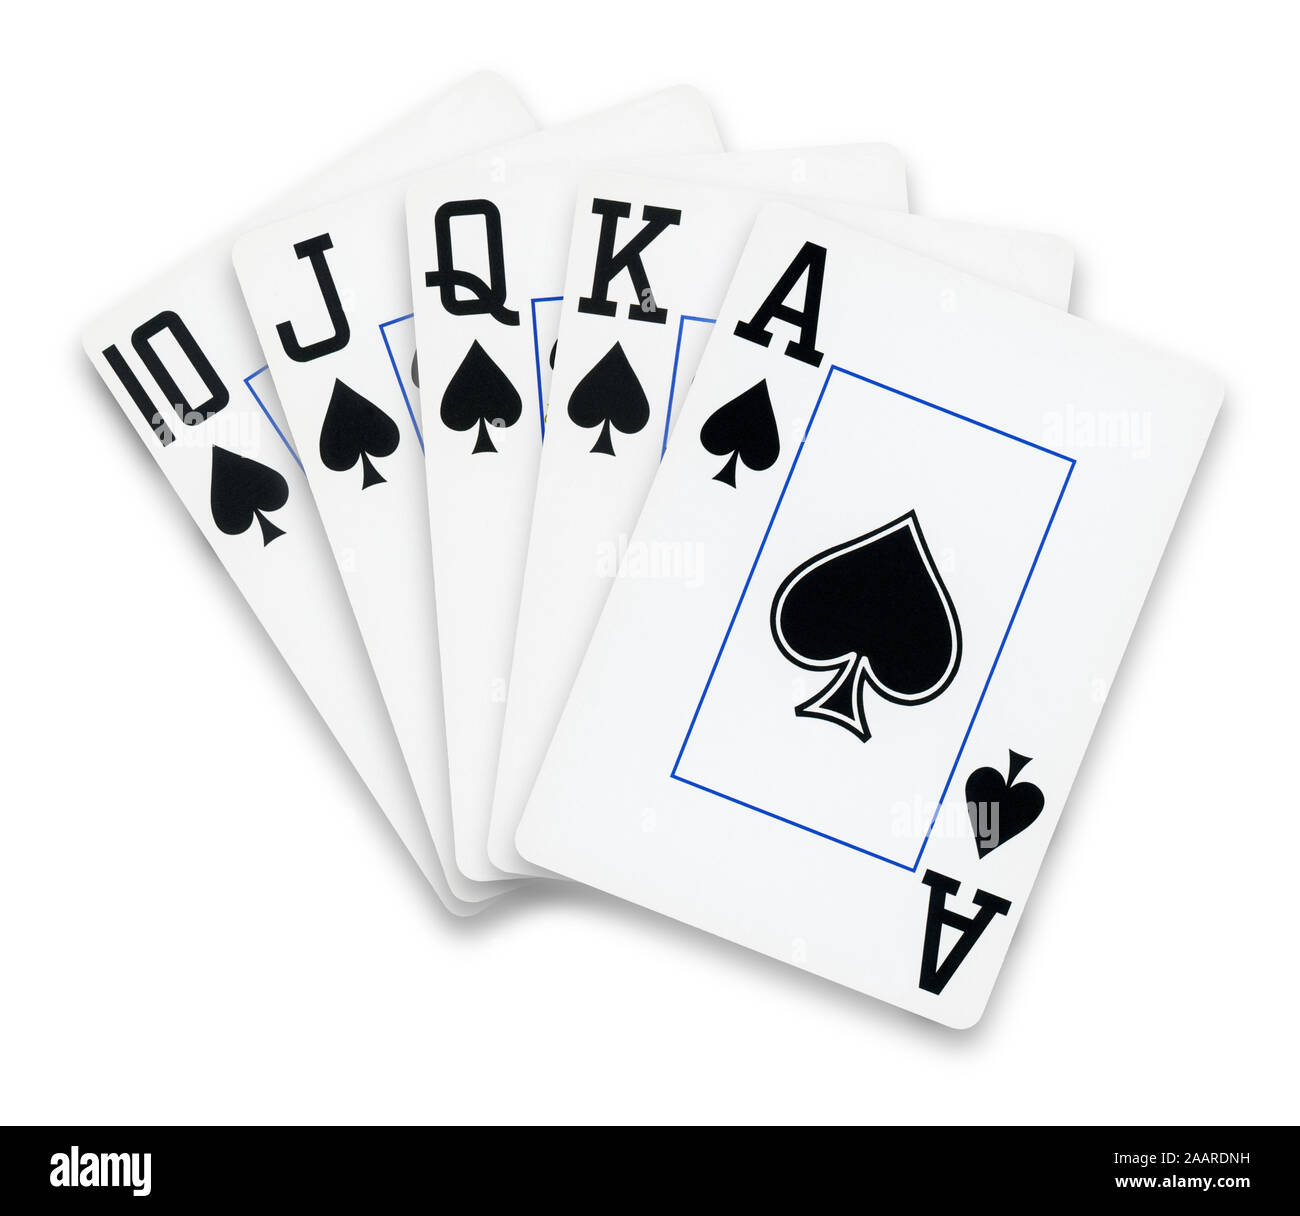 Cartes de poker droit Flush spades mains - isolé sur blanc Banque D'Images